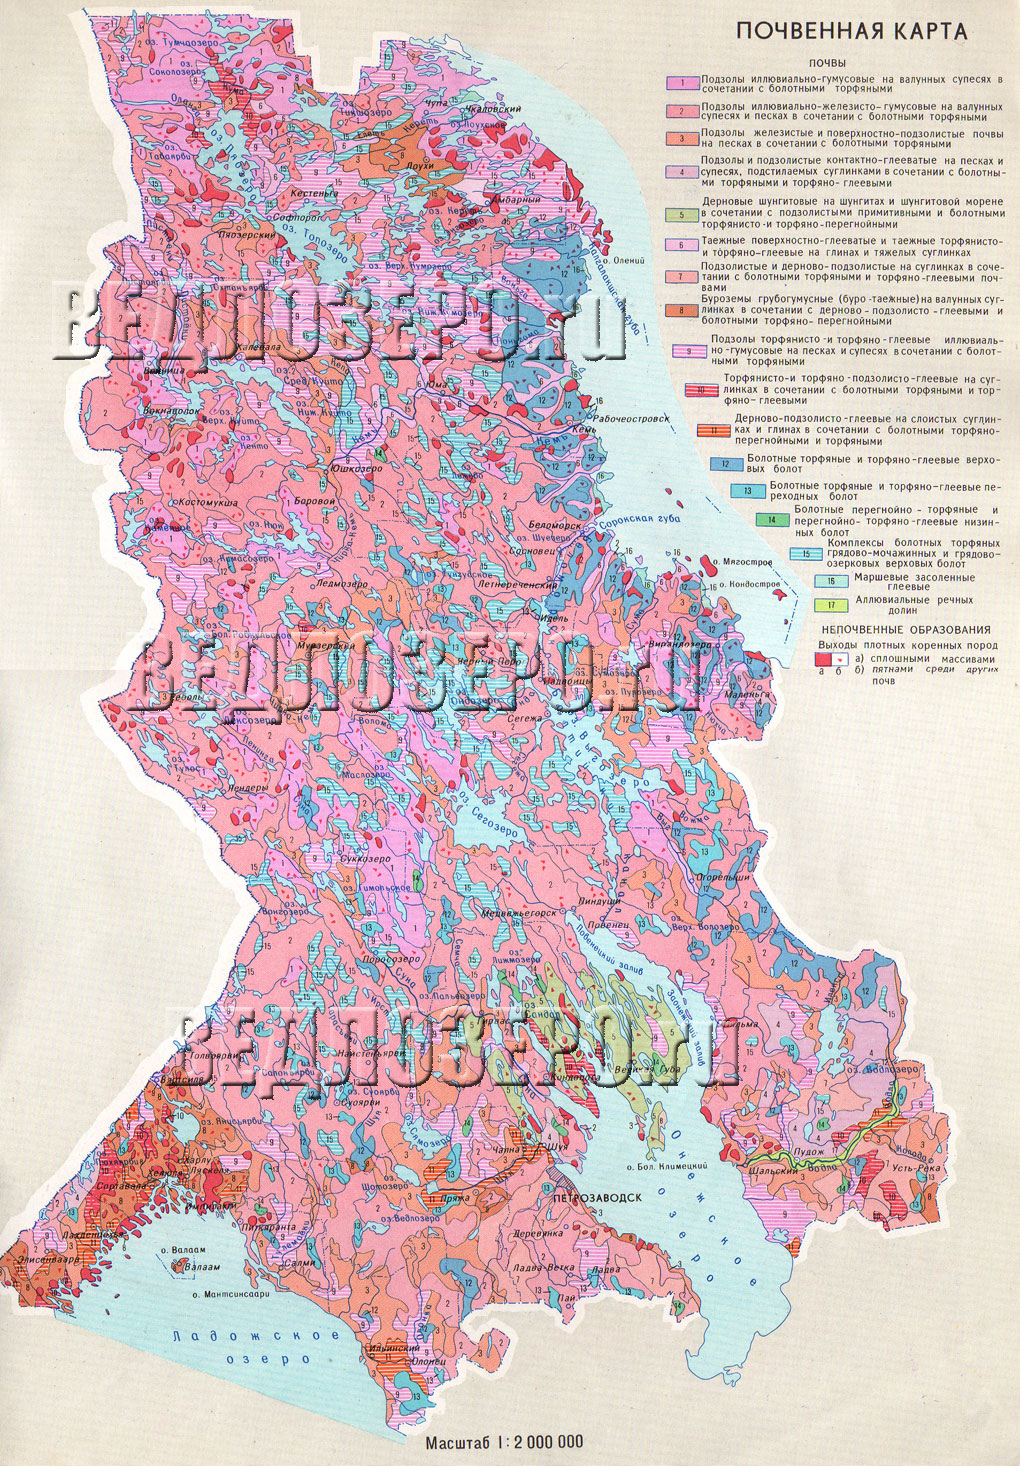 Почвенная карта Республики Карелия. Почва Карелии. Скачать карту Карелии